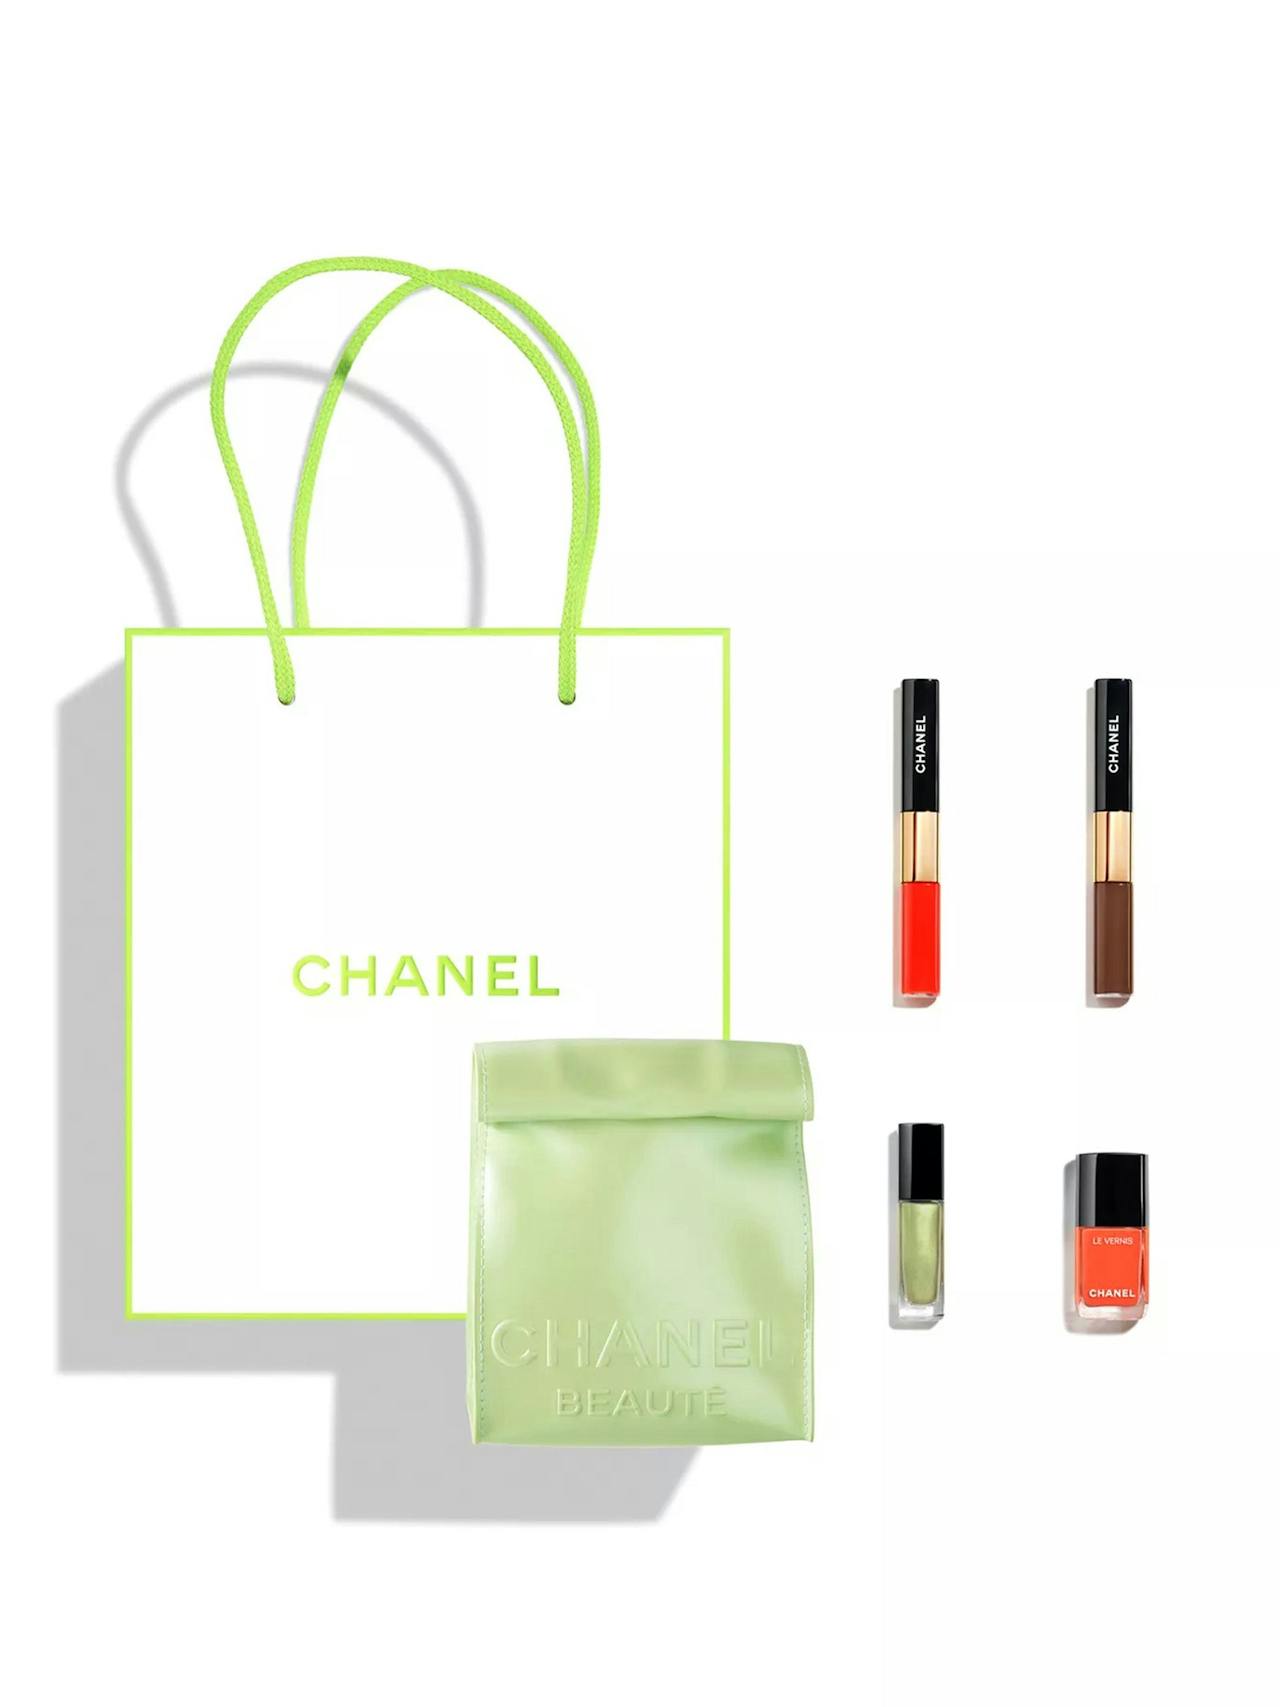 Chanel makeup takeaways the city break